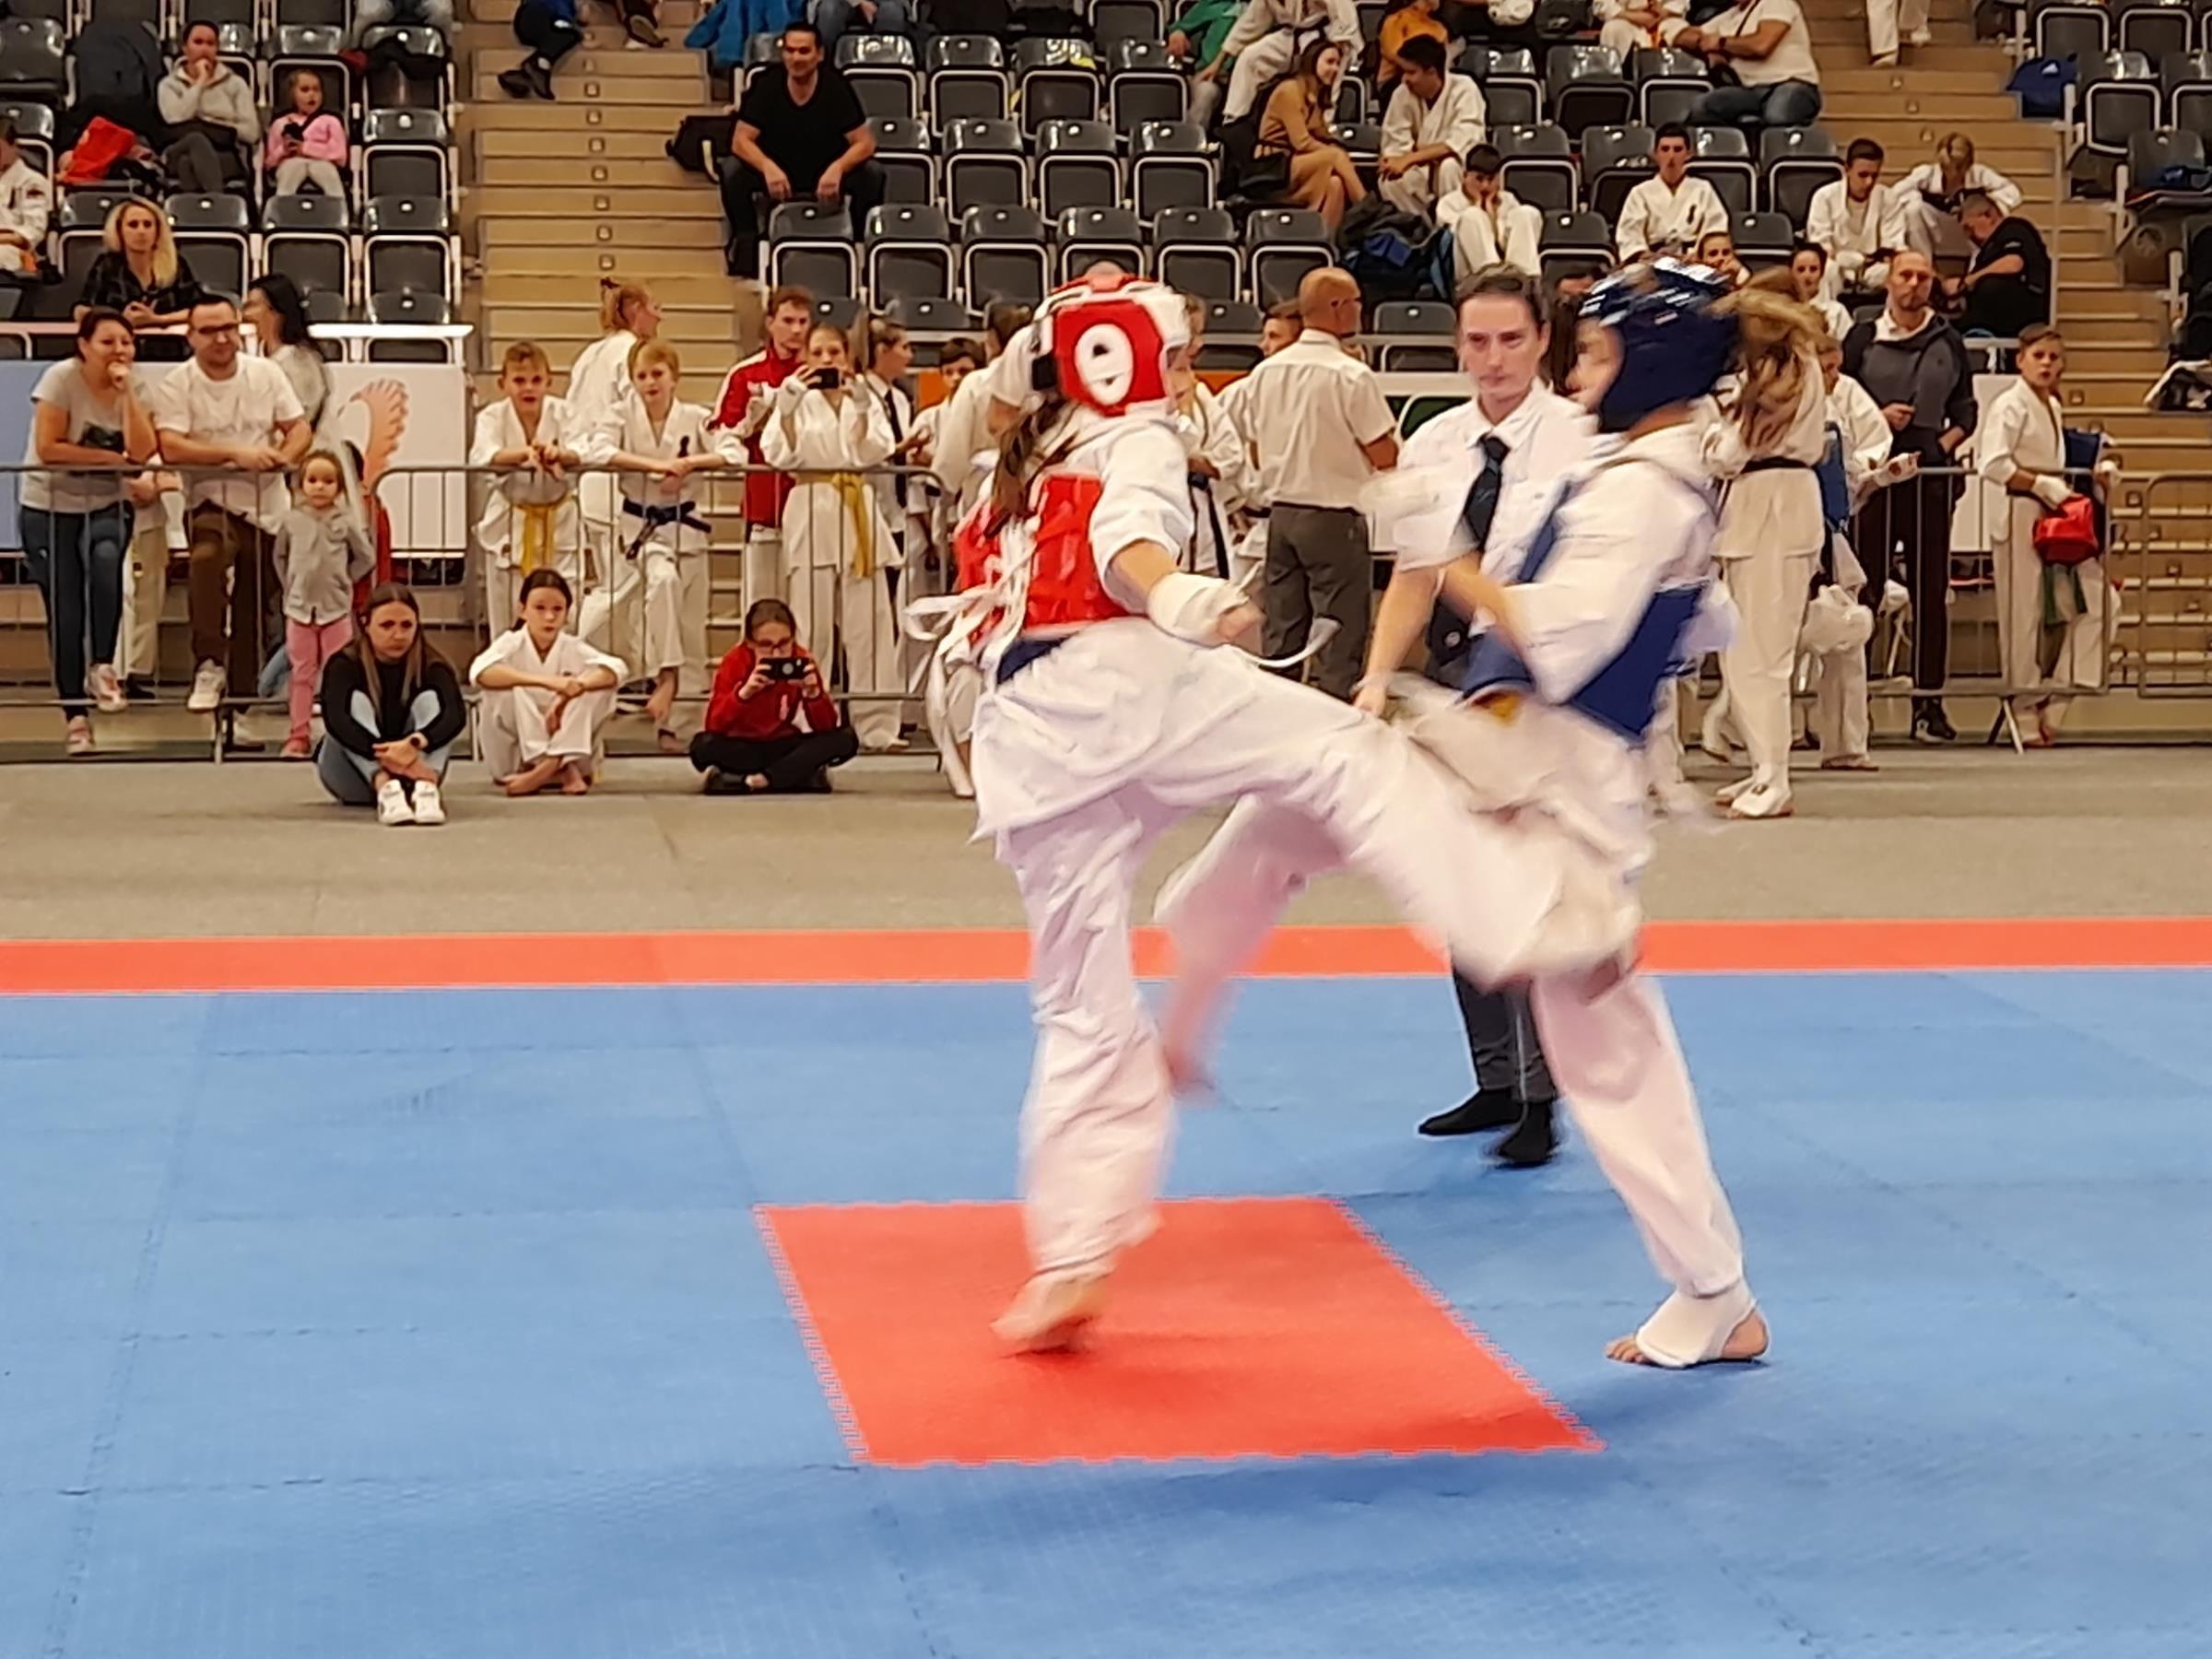 Zdj. nr. 4. XIII Międzynarodowy Turniej Karate Kyokushin CARBON CUP – 30.10.2021 r., Jastrzębie Zdrój